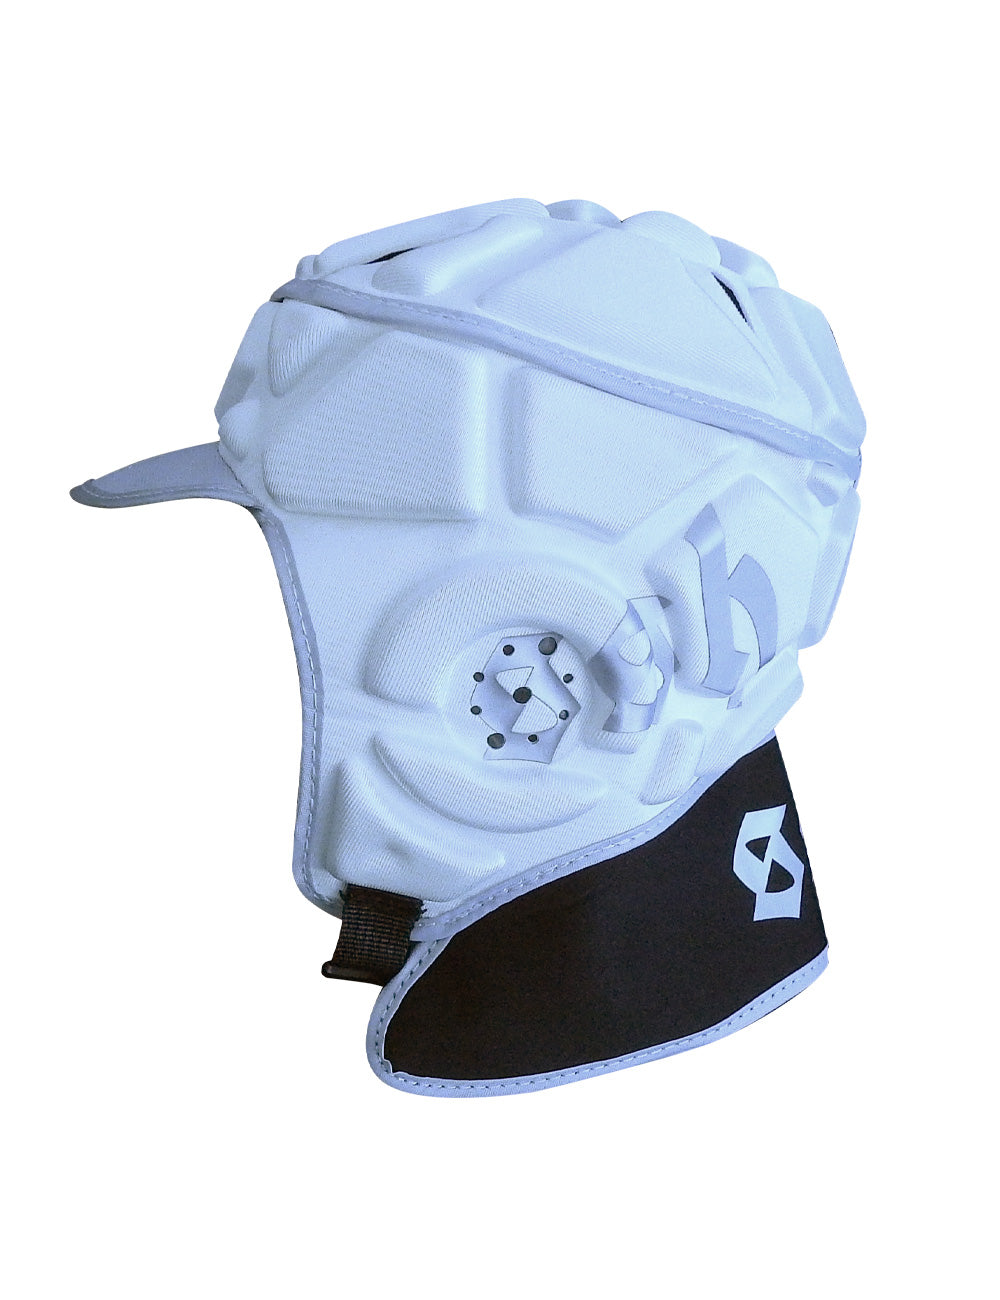 Soft Surf Helmet V2 - White